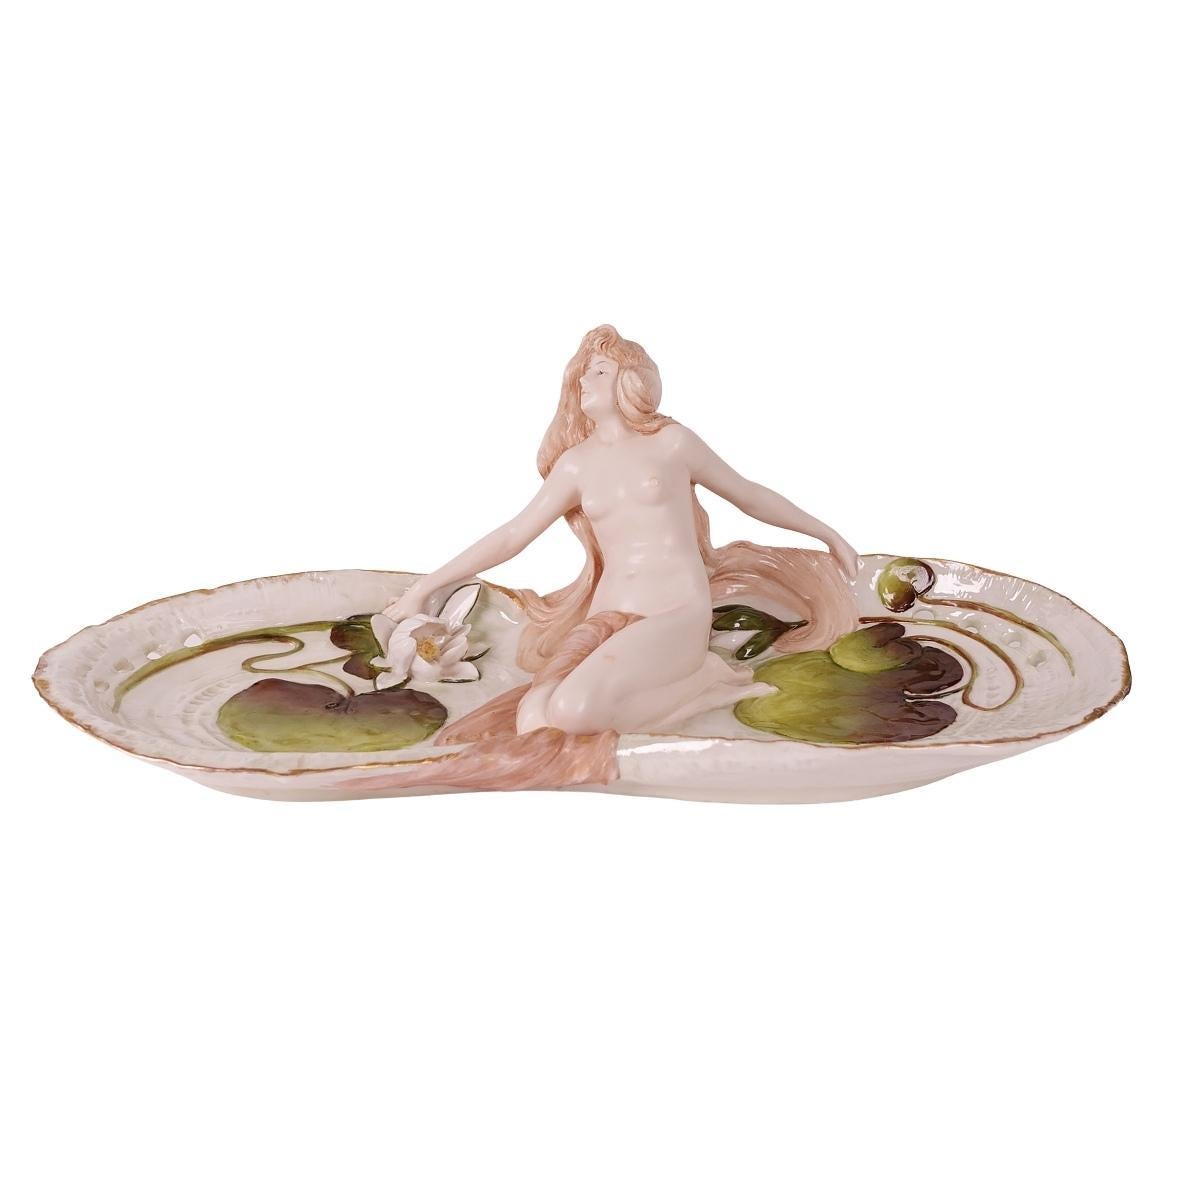 Nous vous proposons ce magnifique plateau figuratif en porcelaine peint à la main par Ernst Wahliss, de style Art nouveau. Ce plateau représente une jeune fille nue assise, flanquée de motifs aquatiques en forme de nénuphars verts et d'une fleur